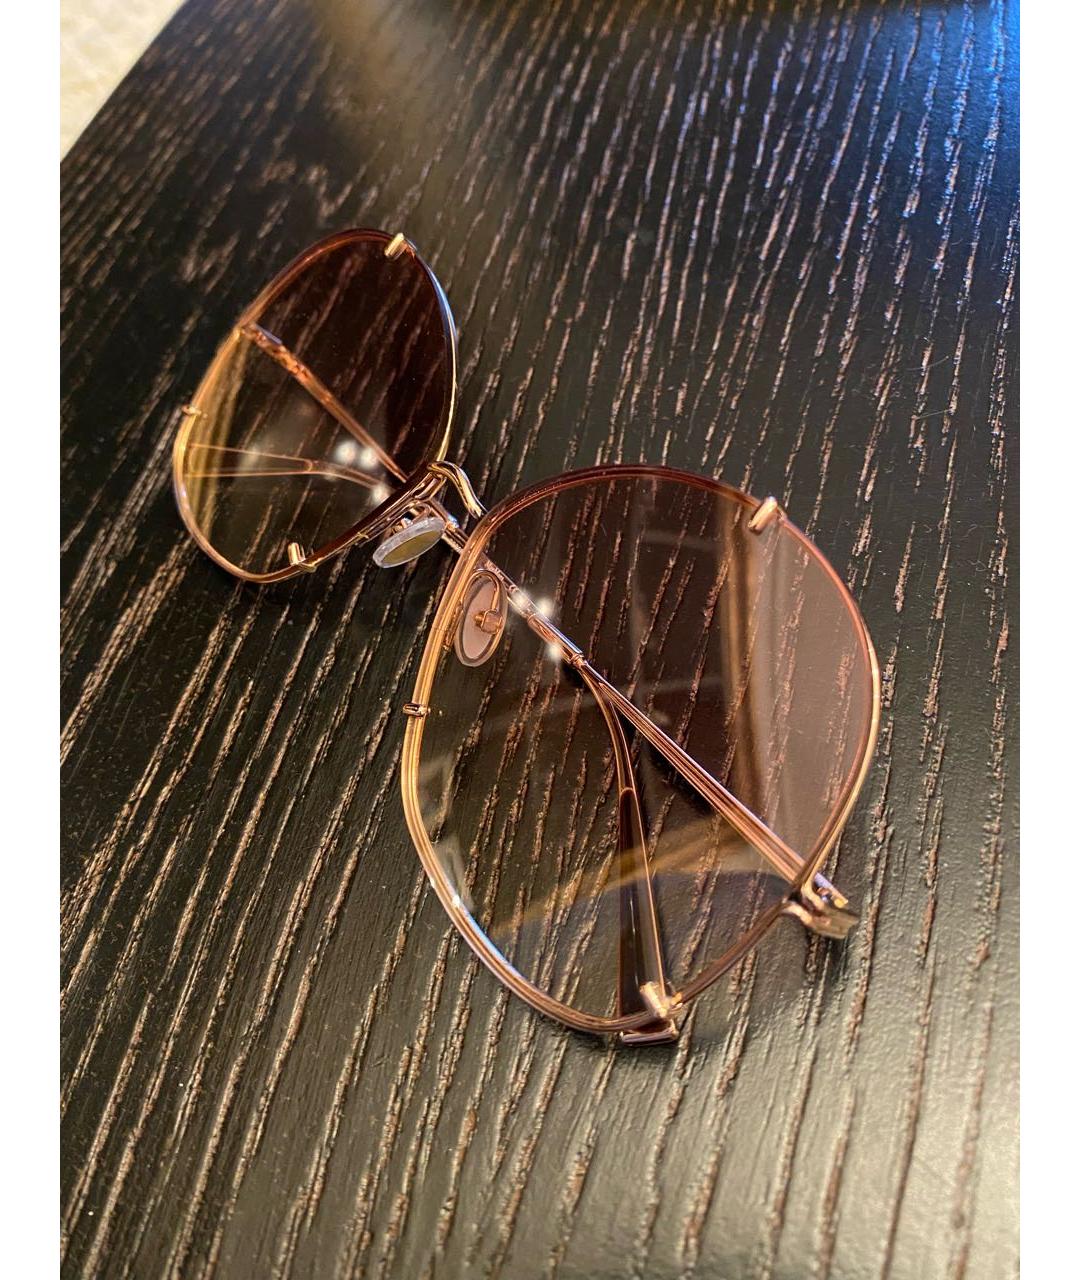 MAX MARA Розовые металлические солнцезащитные очки, фото 2